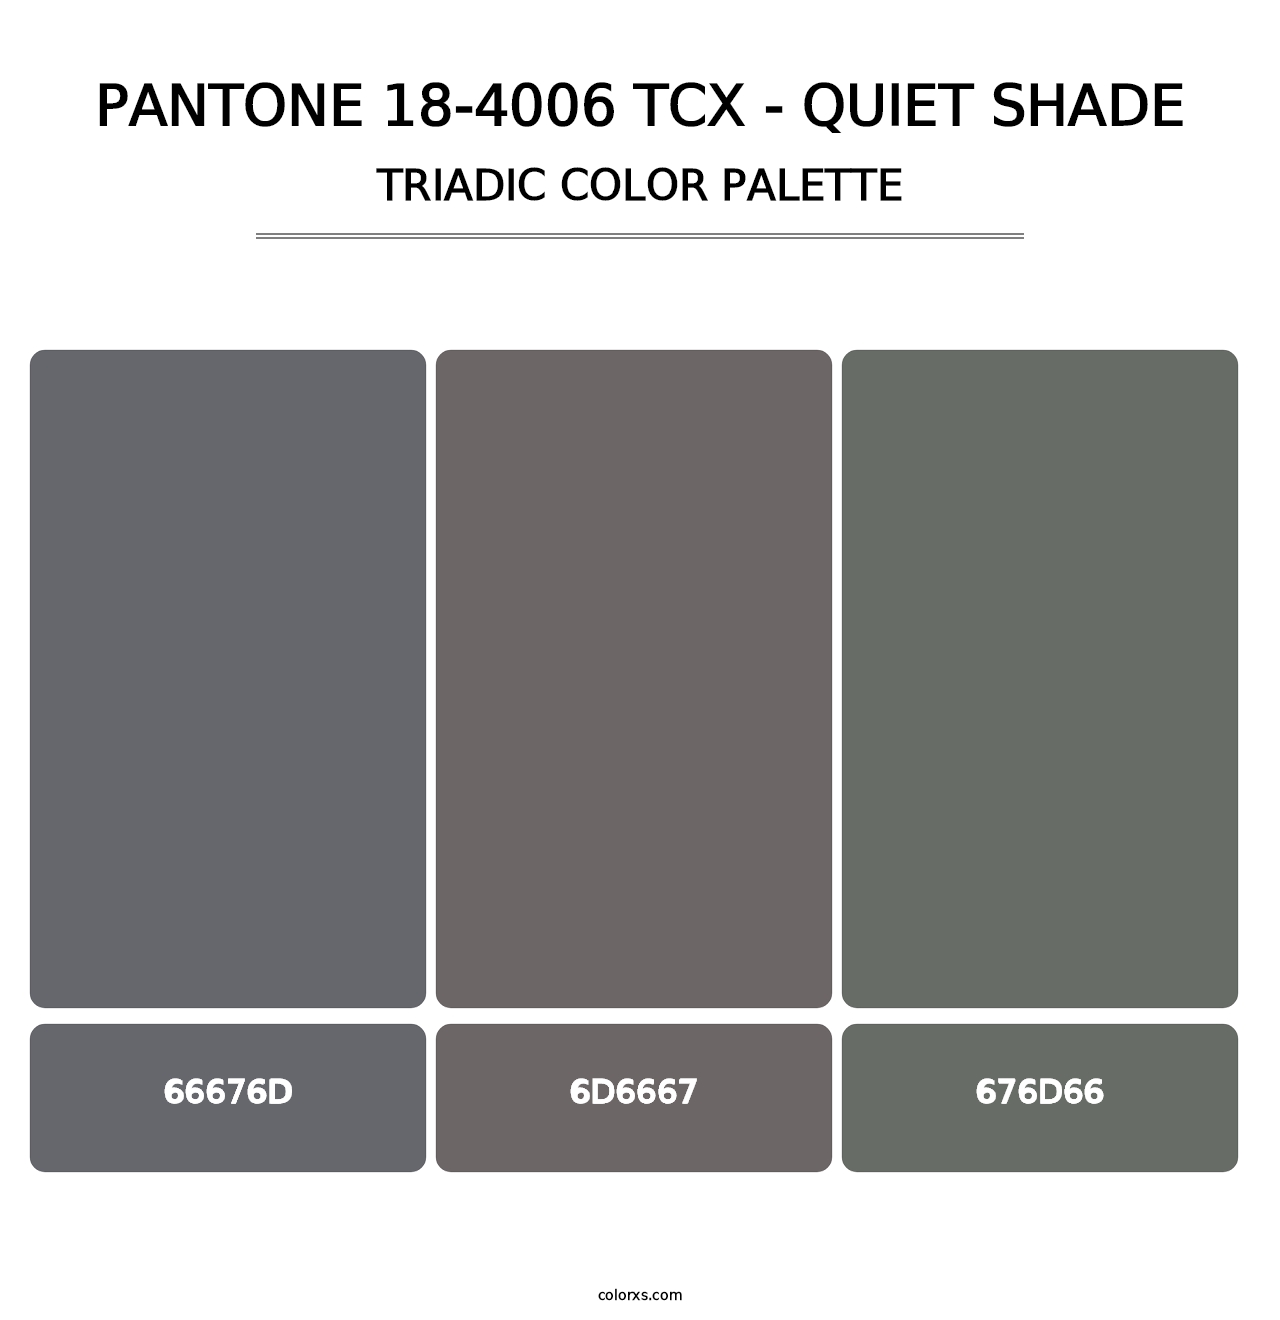 PANTONE 18-4006 TCX - Quiet Shade - Triadic Color Palette